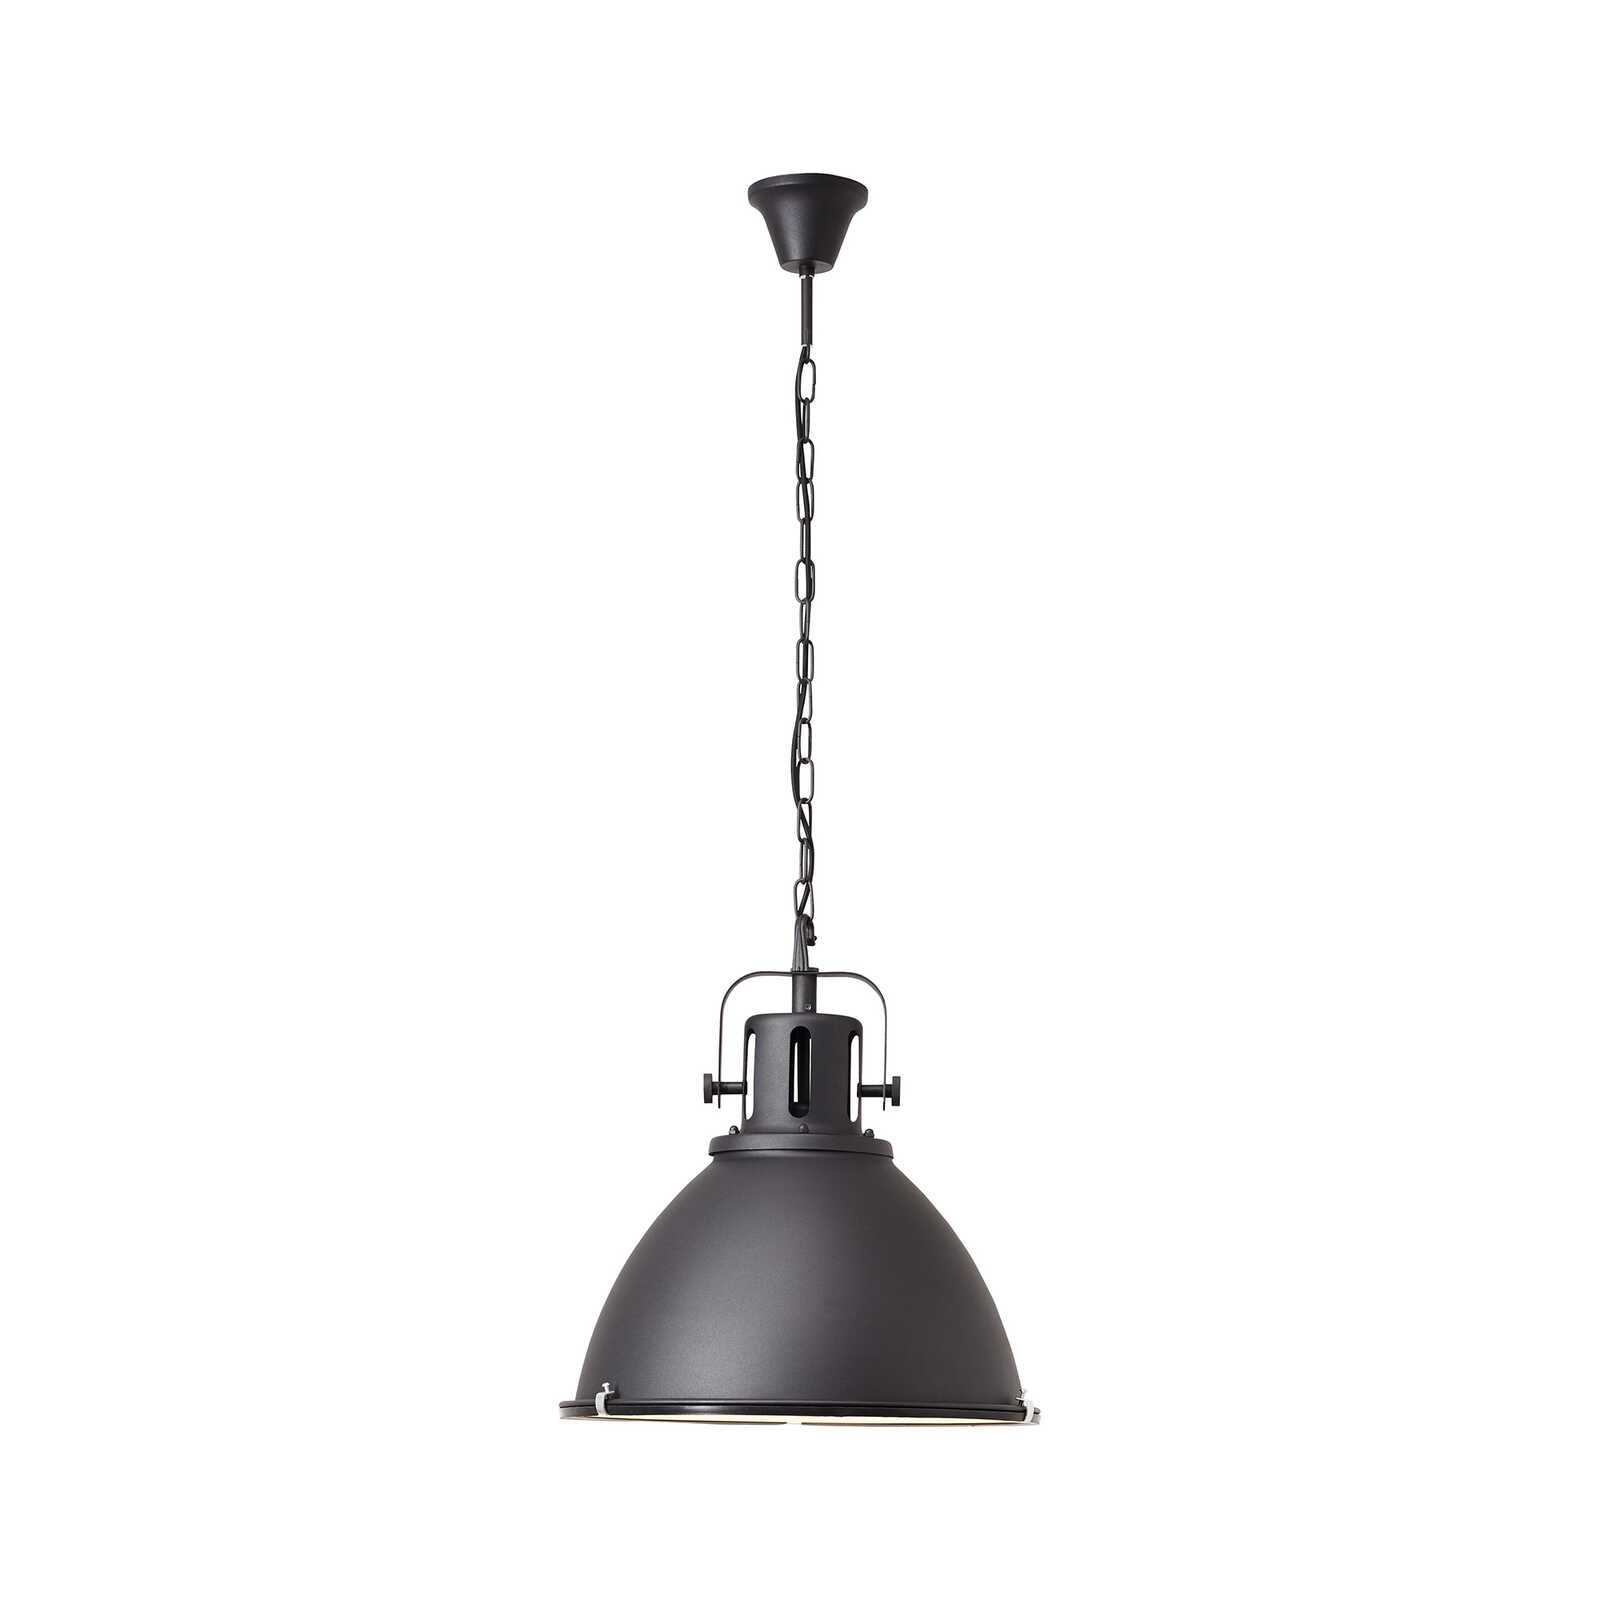 Metalen hanglamp - Josefine 6 - Zwart
